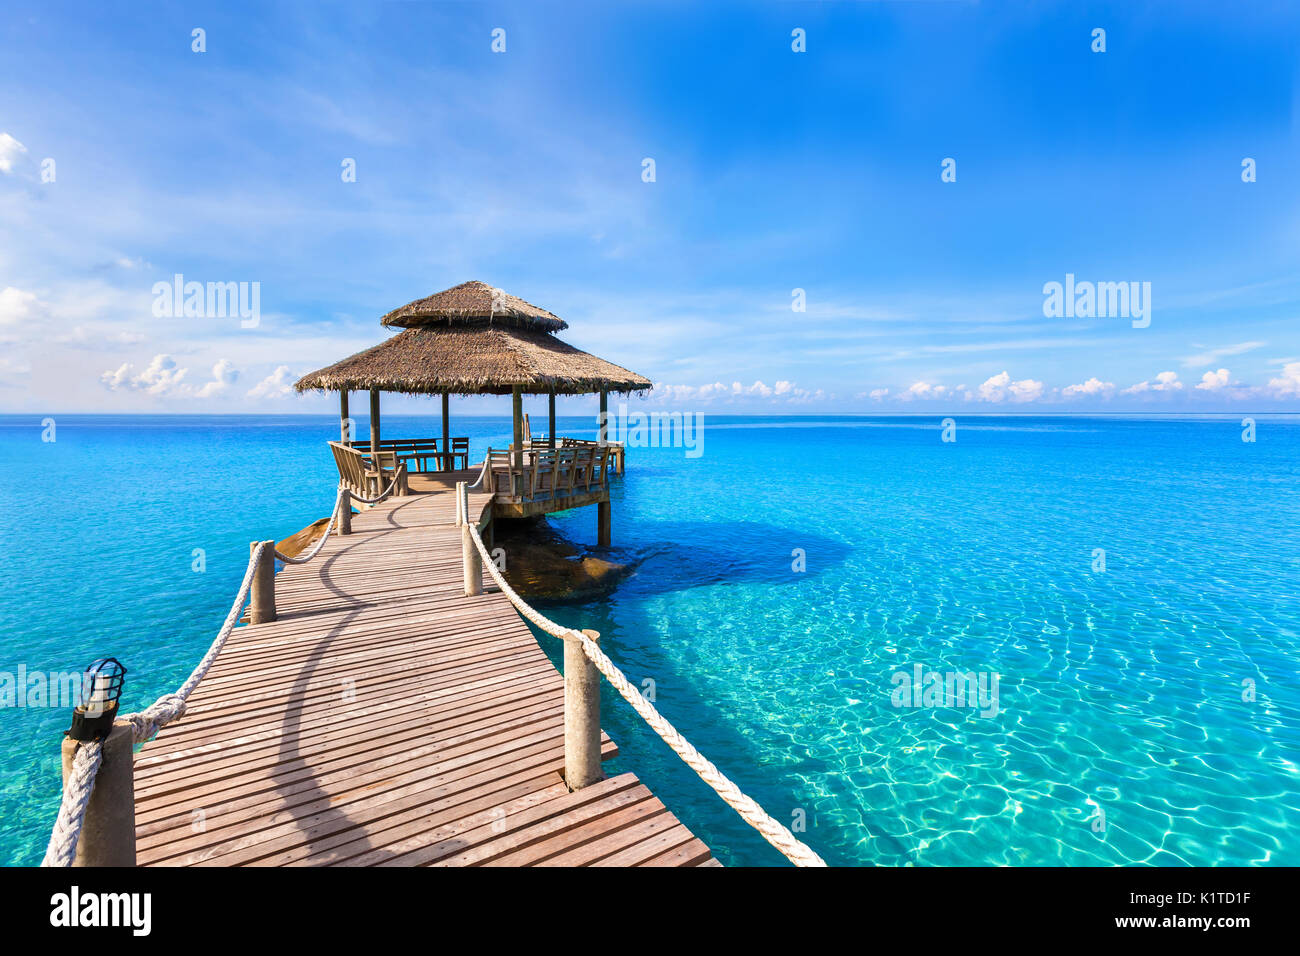 Schönen tropischen Sommer Strand Landschaft, luxuriöse Hotel hölzerne Seebrücke mit transparenten, türkisfarbene Meer Wasser Stockfoto